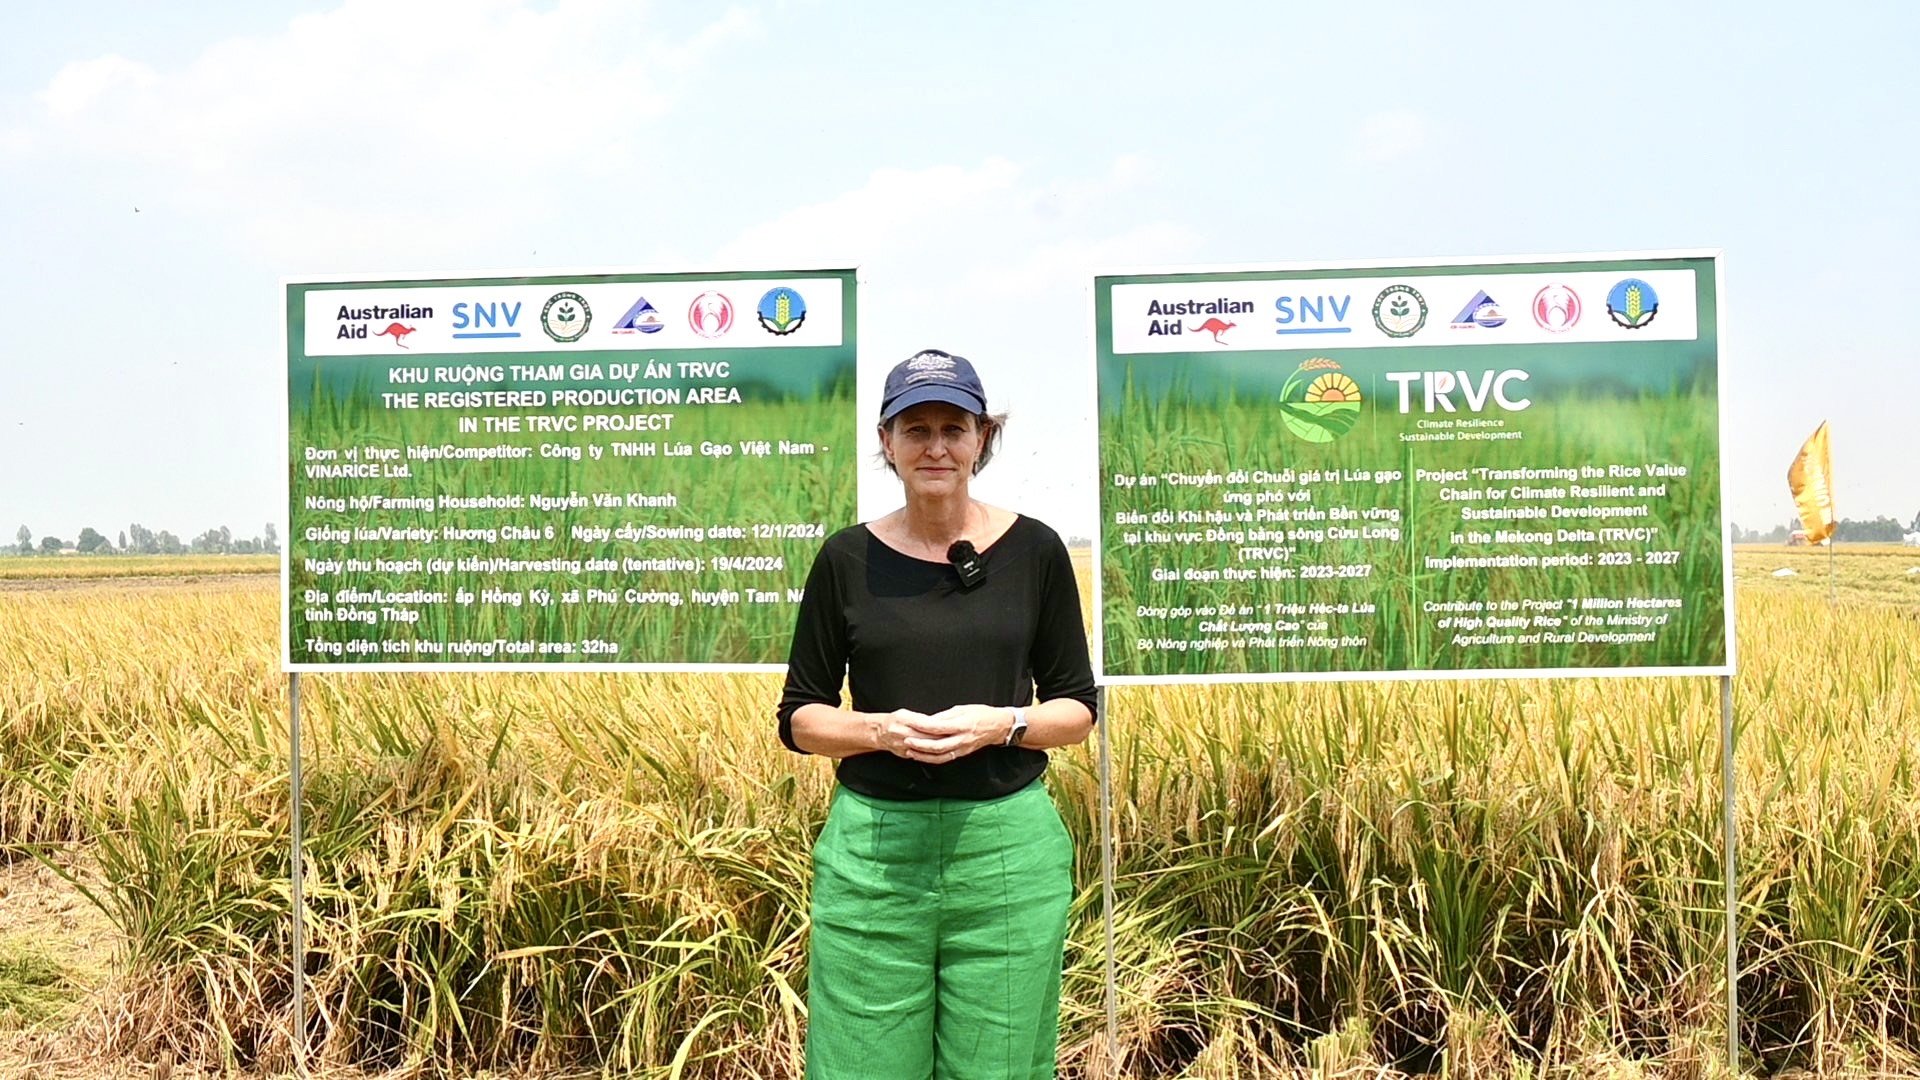 Bà Kristin Tilley, Đại sứ Australia về biến đổi khí hậu - Bộ Ngoại giao và Thương mại Australia đánh giá tích cực về kết quả Dự án TRVC mang lại cho cộng đồng.